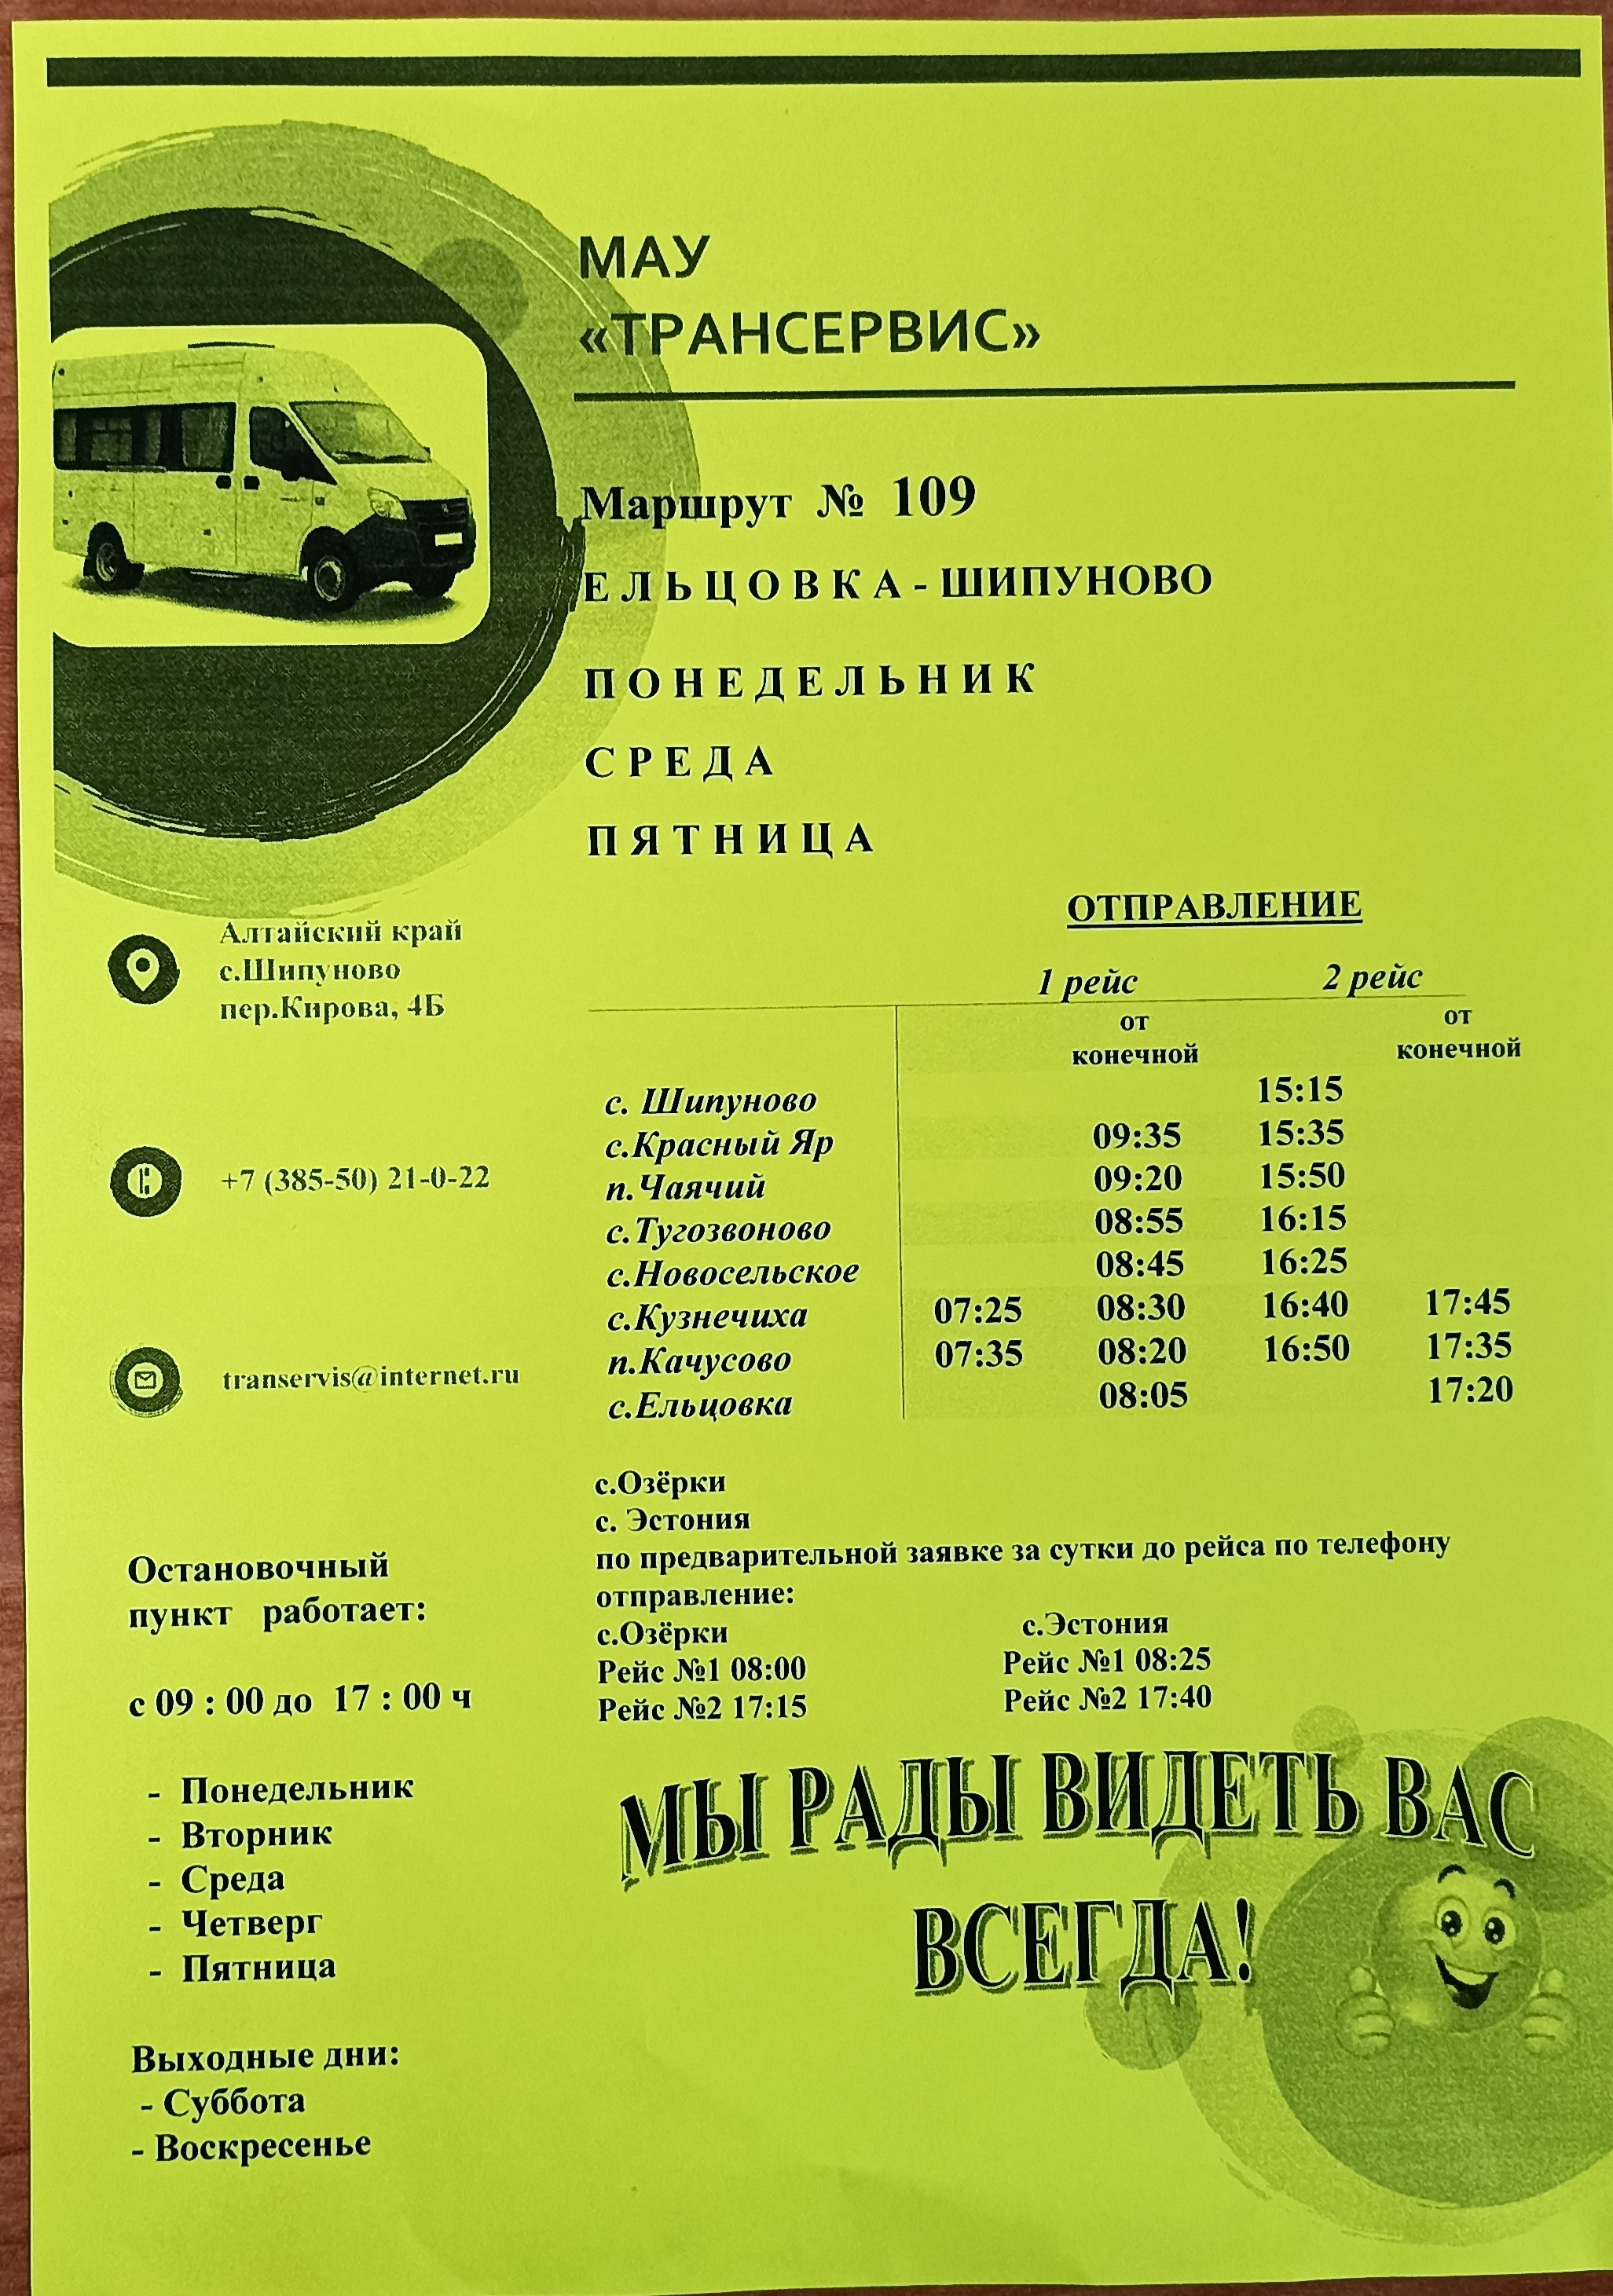 Уточненное расписание автобуса 109 маршрута Ельцовка-Шипуново.